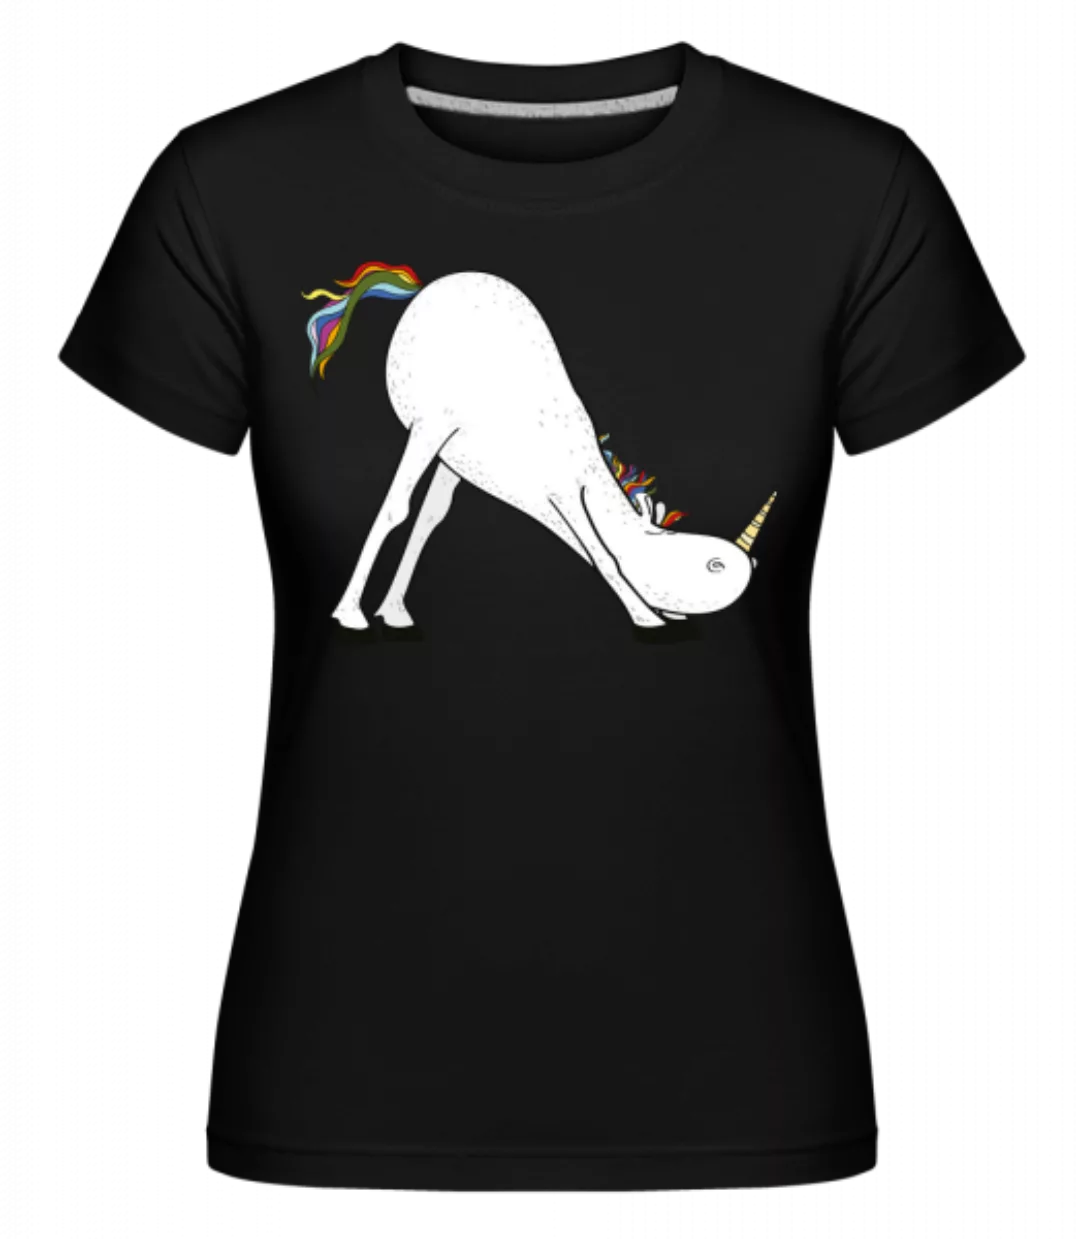 Yoga Einhorn Herabschauende Hund · Shirtinator Frauen T-Shirt günstig online kaufen